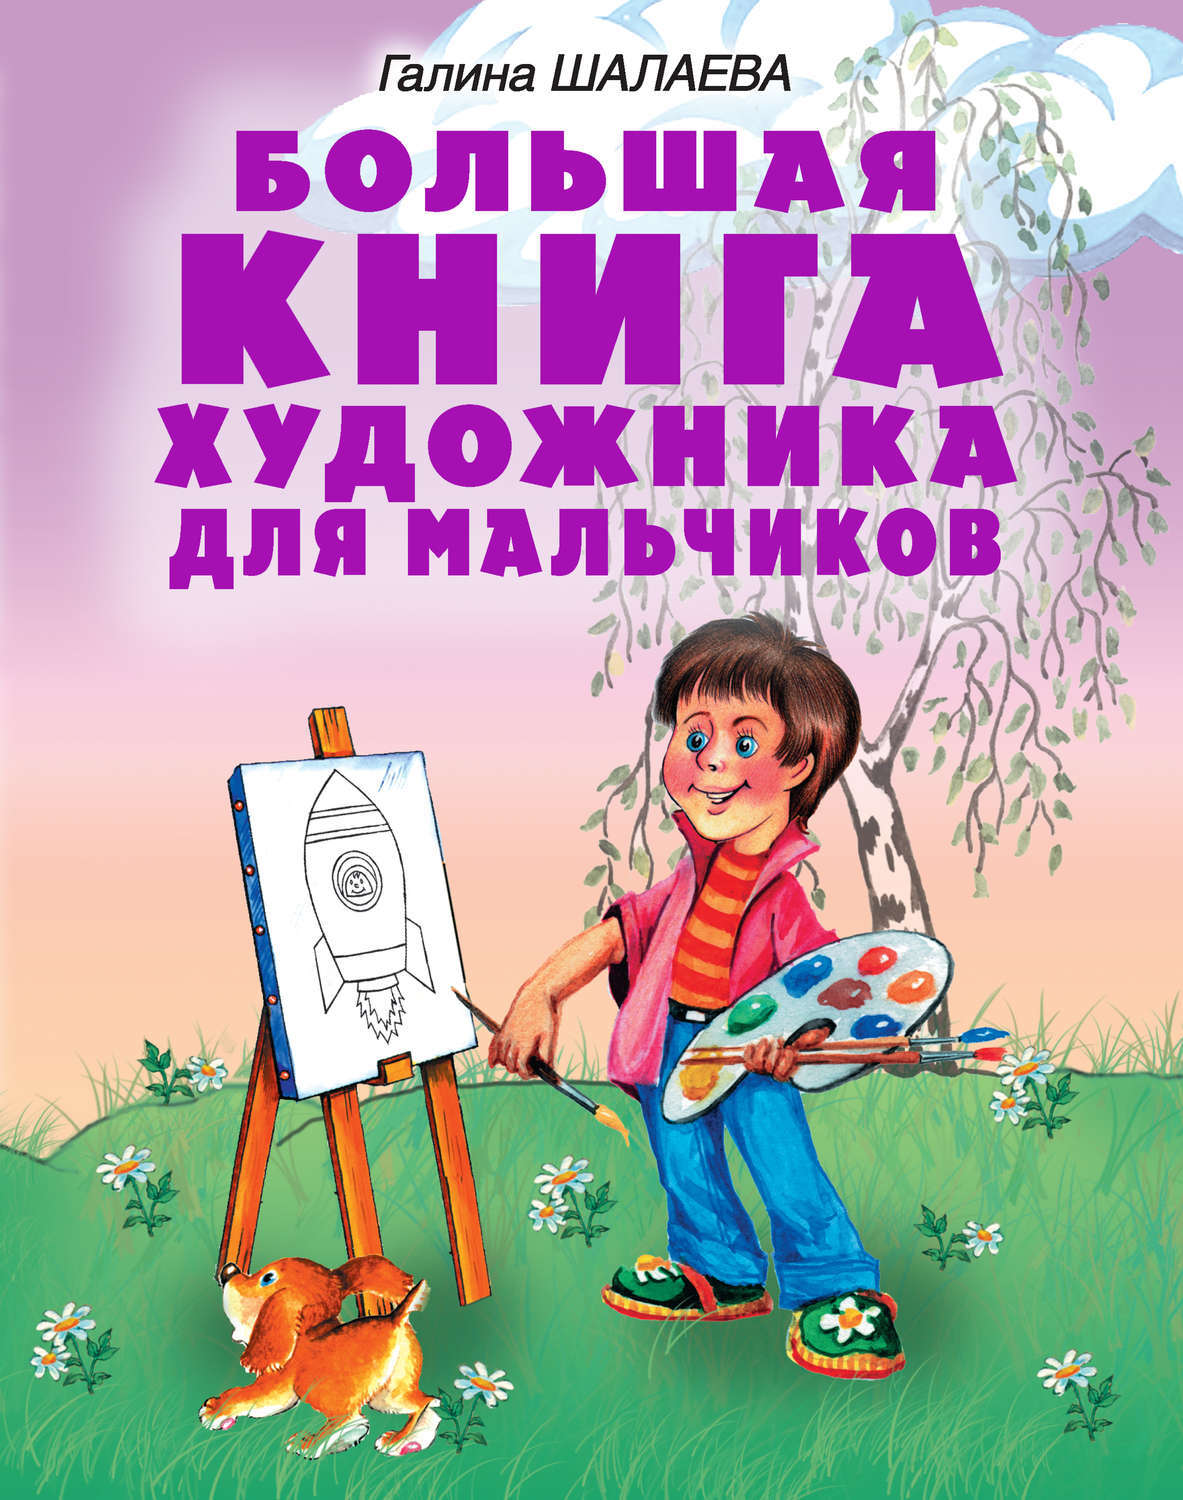 Книга Шалаева большая книга художника для мальчиков